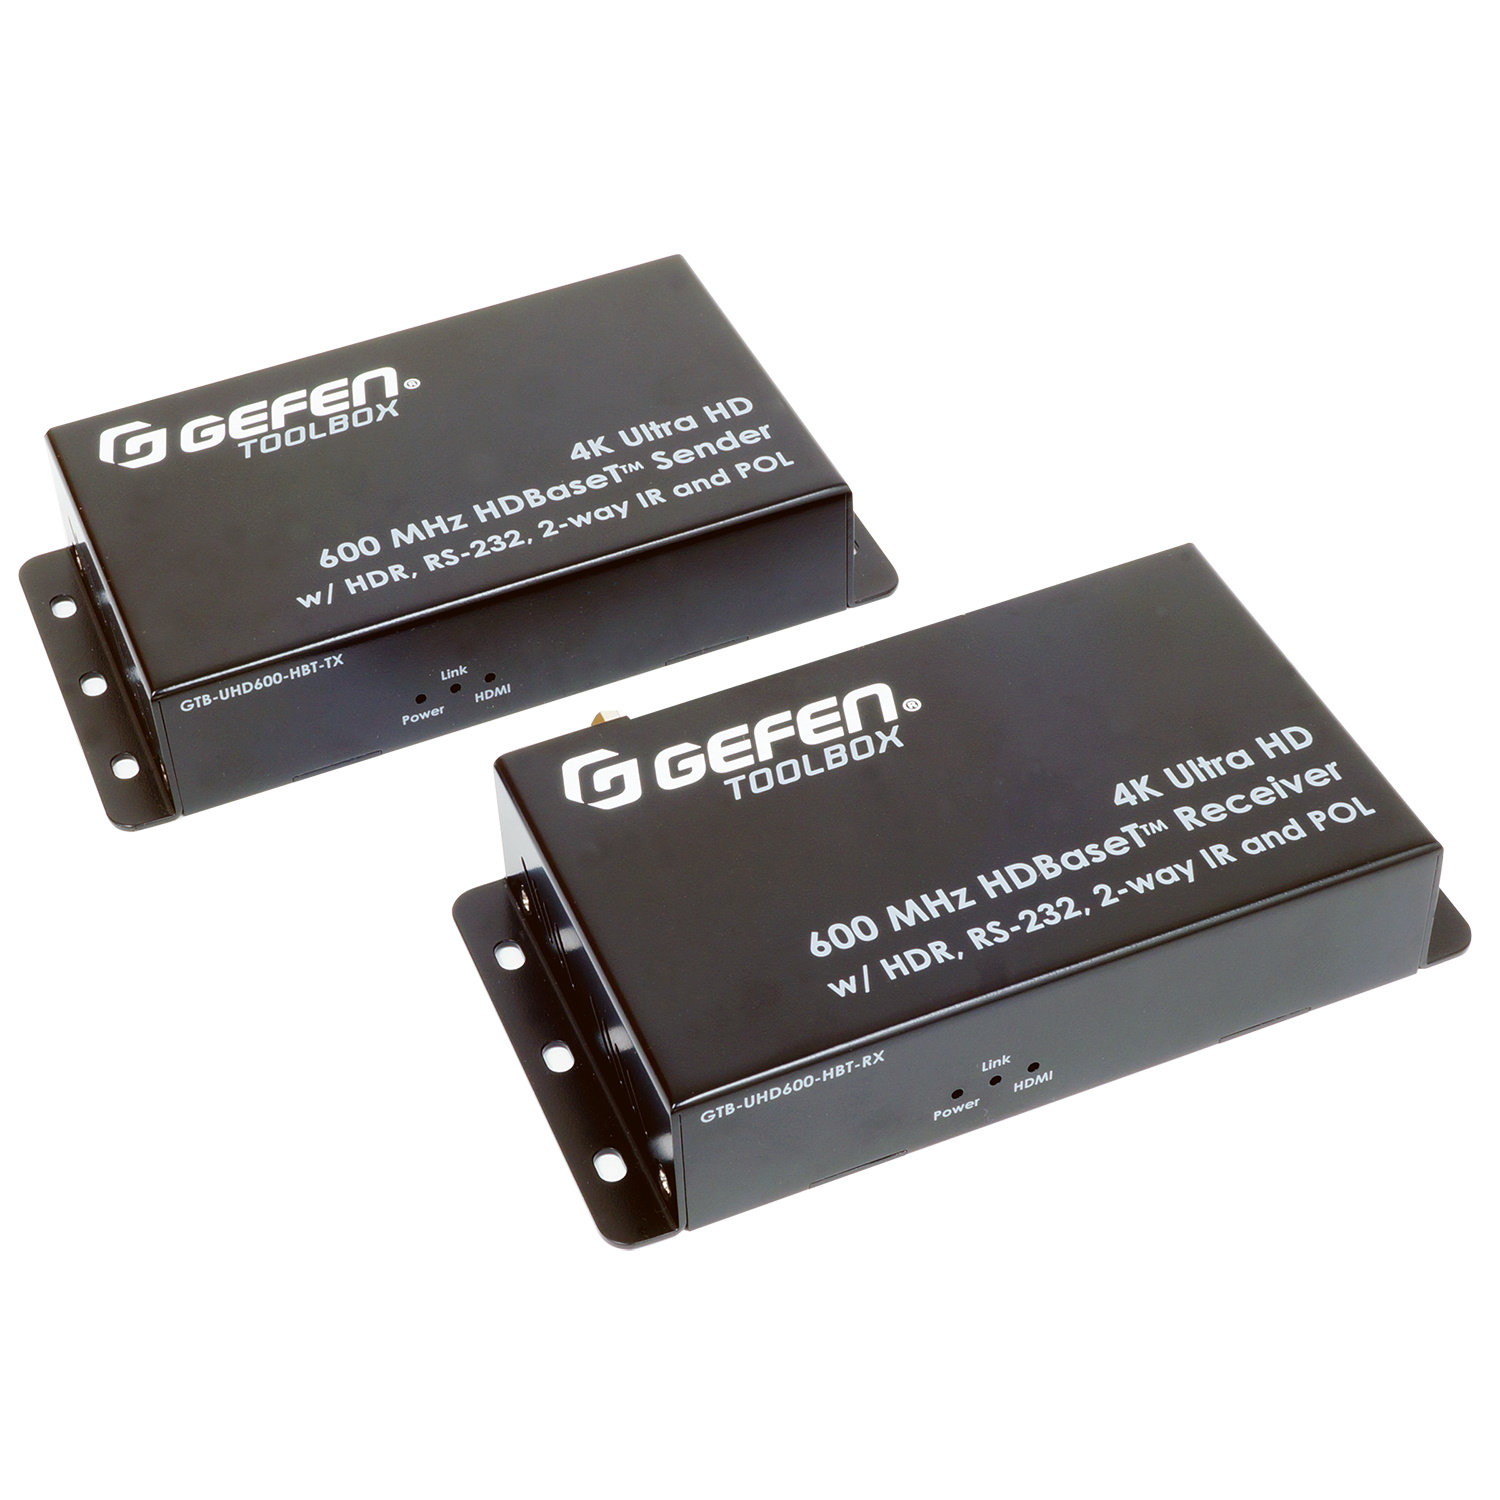 HDMI коммутаторы, разветвители, повторители Gefen GTB-UHD600-HBT hdmi коммутаторы разветвители повторители dr hd комплект приемник передатчик hdmi по ip dr hd ex 100 lir